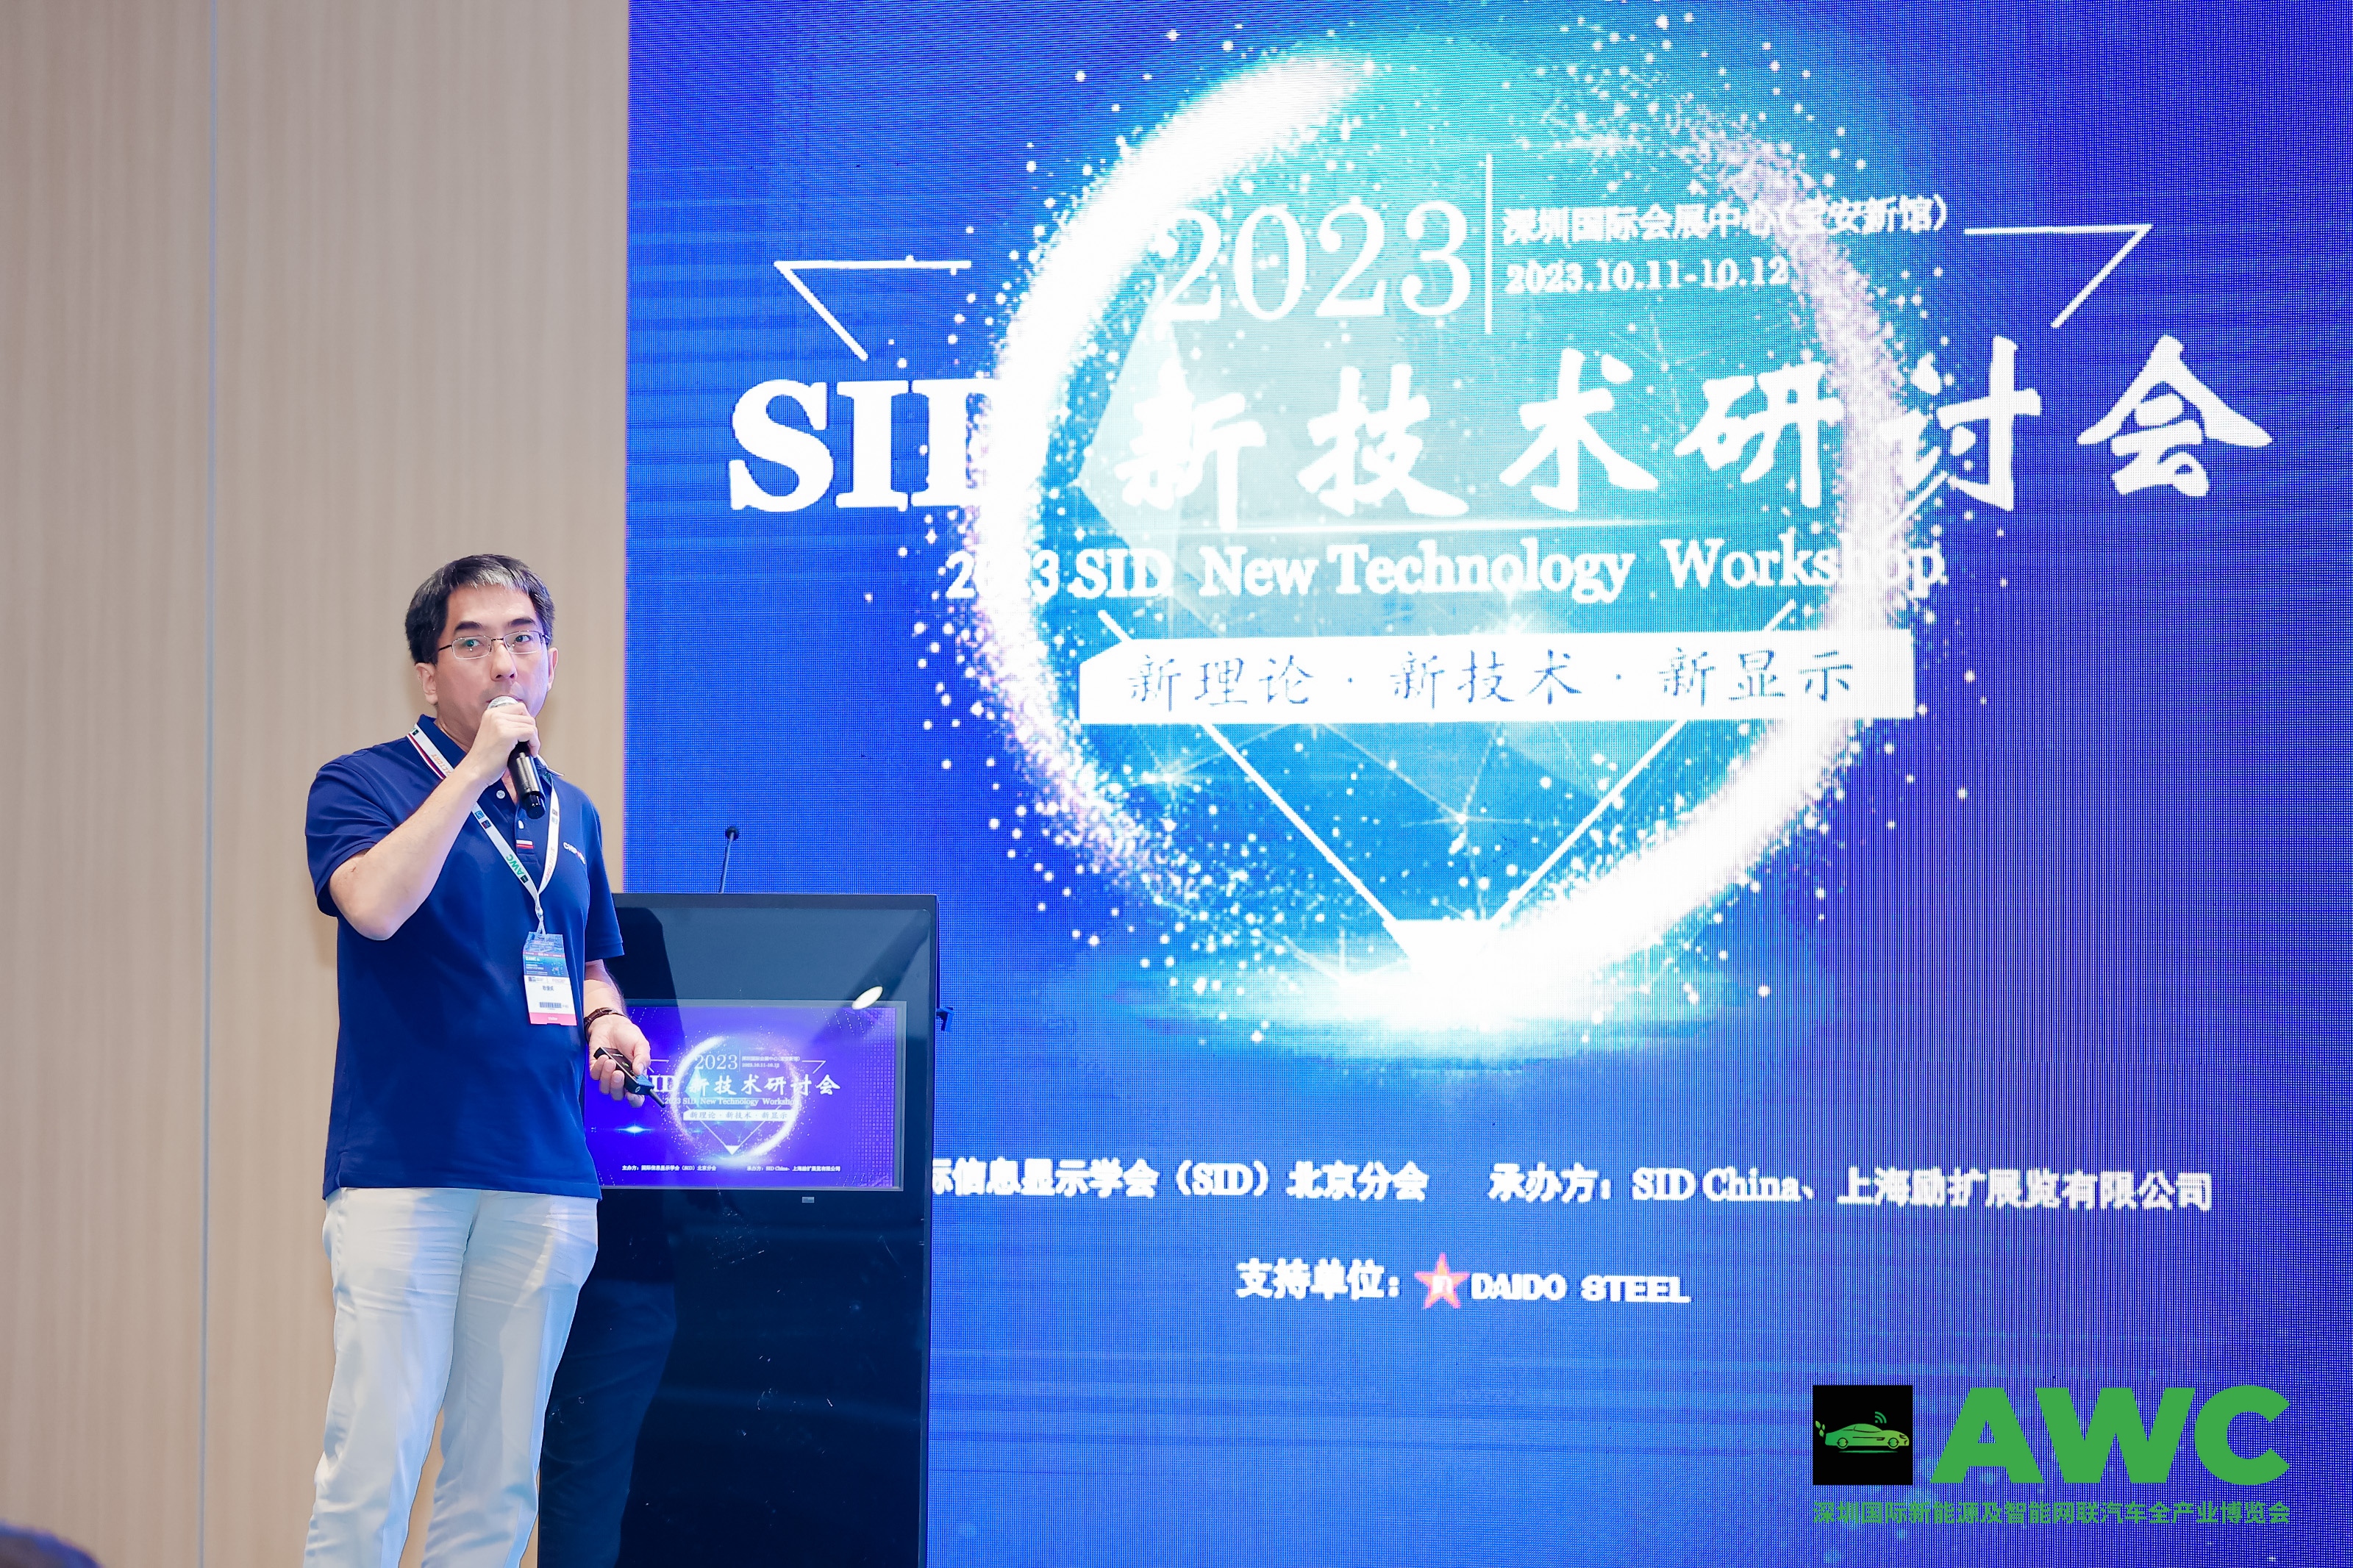 集创北方副总裁耿俊成受邀参加“2023 SID新技术研讨会”  并发表主题演讲